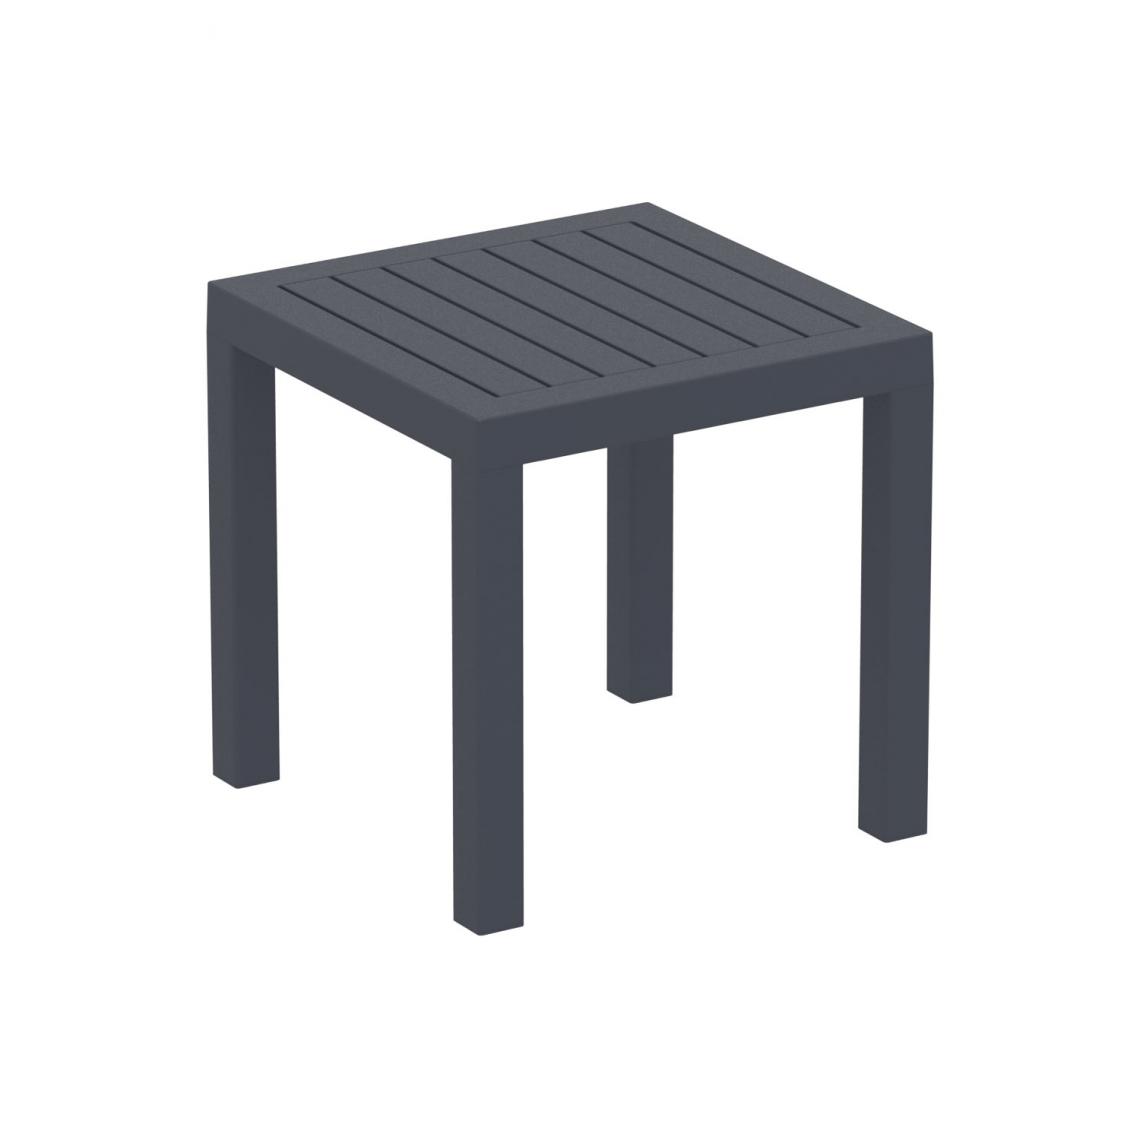 Icaverne - Magnifique Table d'appoint edition Paris couleur gris foncé - Ensembles tables et chaises